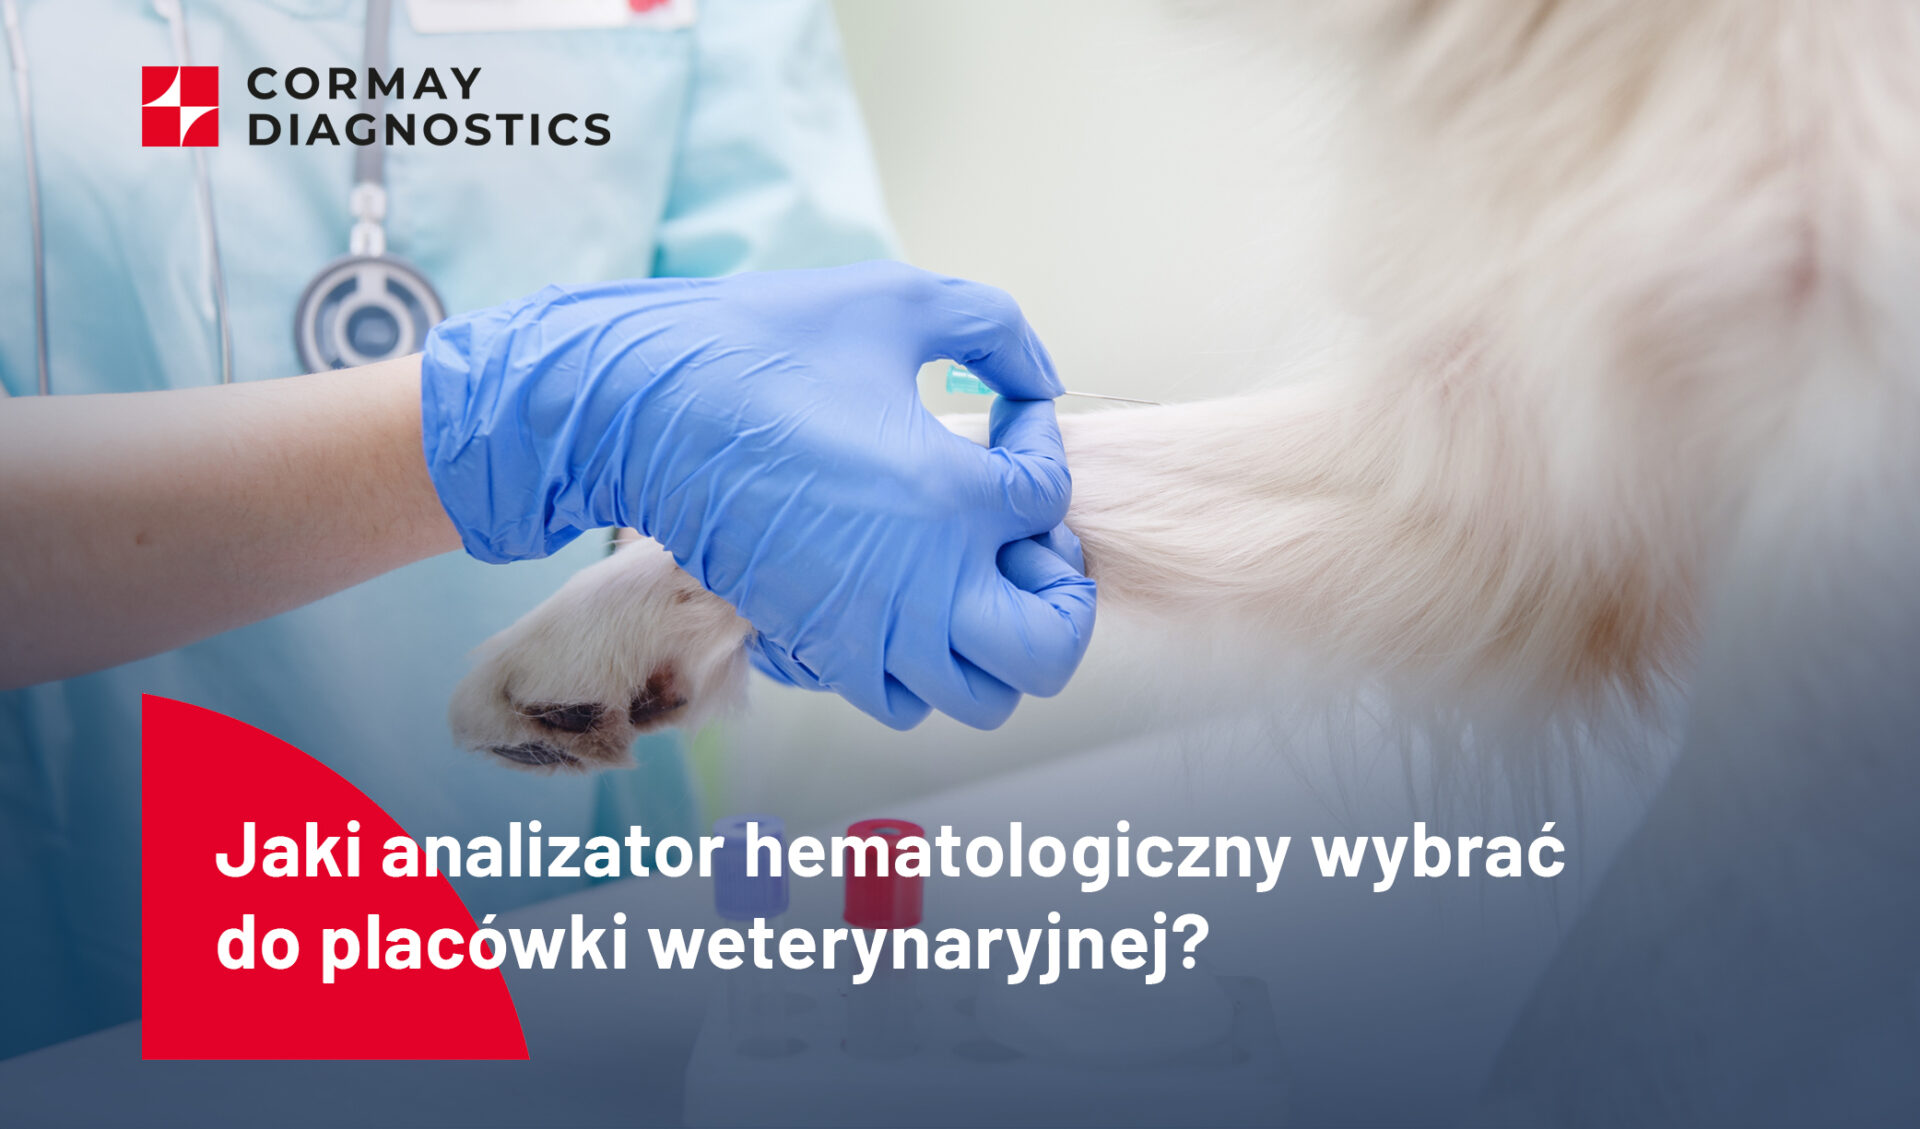 Jaki analizator hematologiczny wybrać do placówki weterynaryjnej?